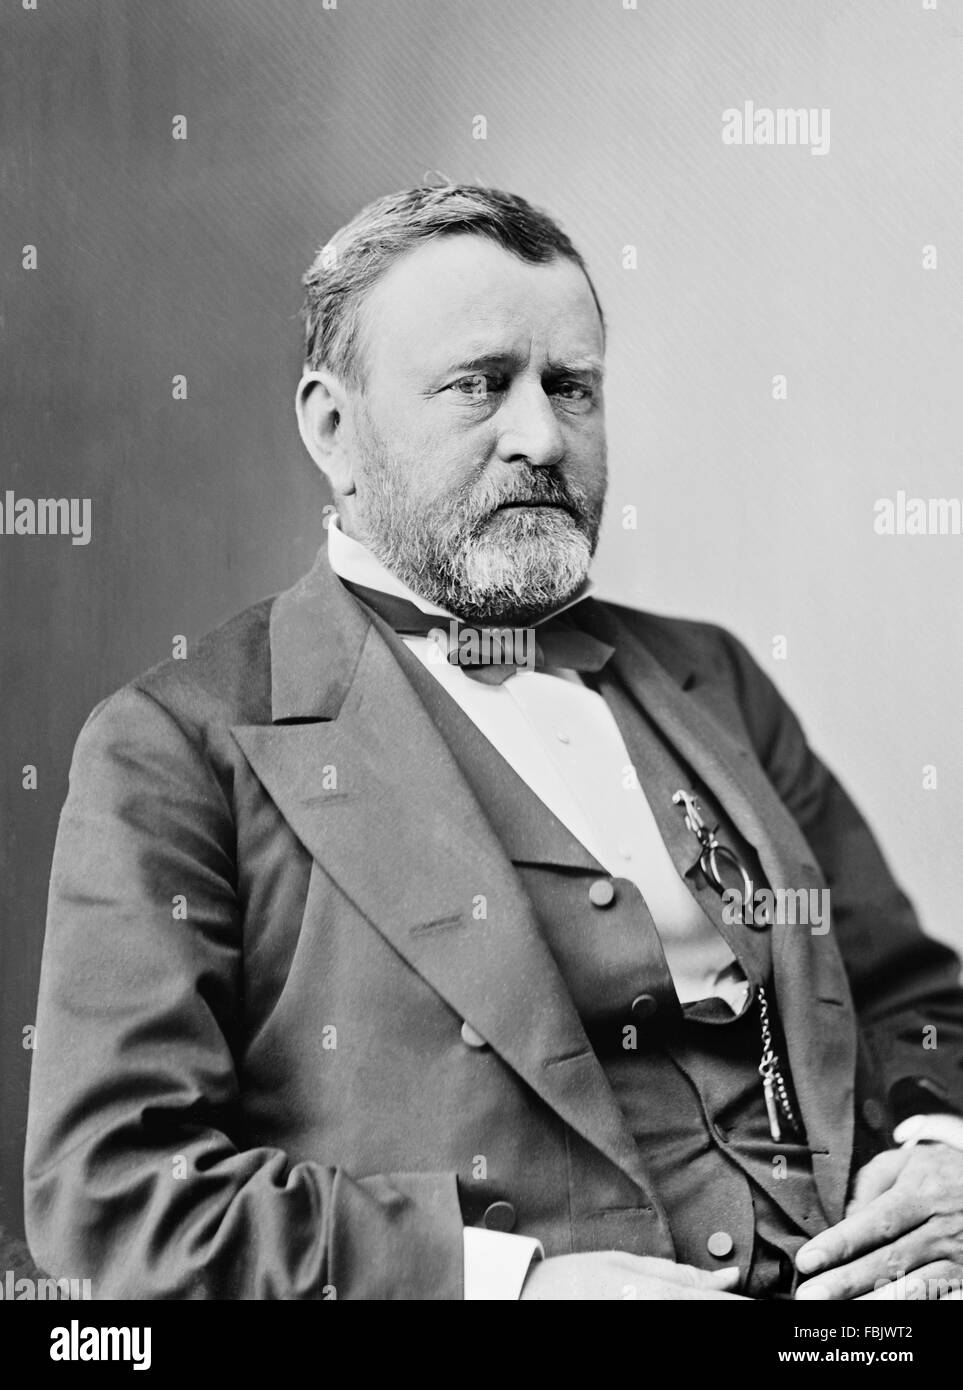 Ulysses S Grant, retrato del 18º Presidente de Estados Unidos, realizadas entre 1870 y 1885 Foto de stock